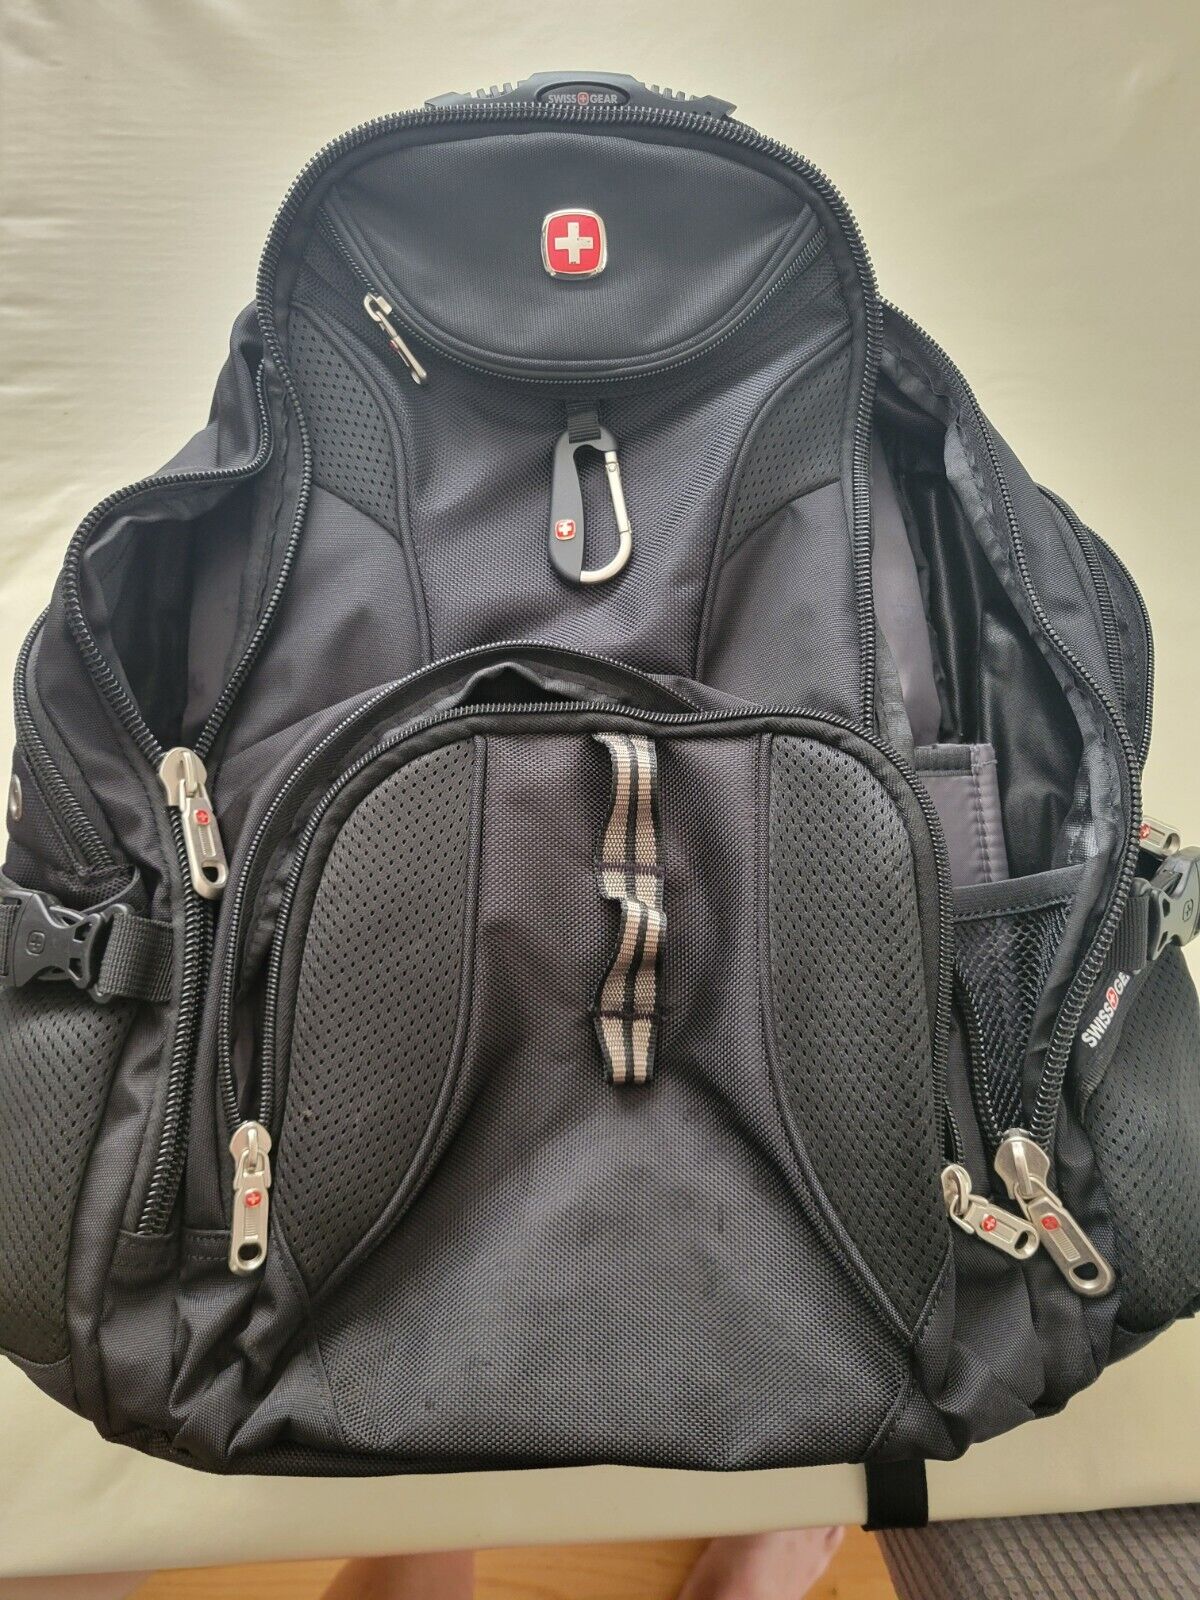 SwissGear 1900 Scansmart TSA 17-Inch Laptop Backpack, Black